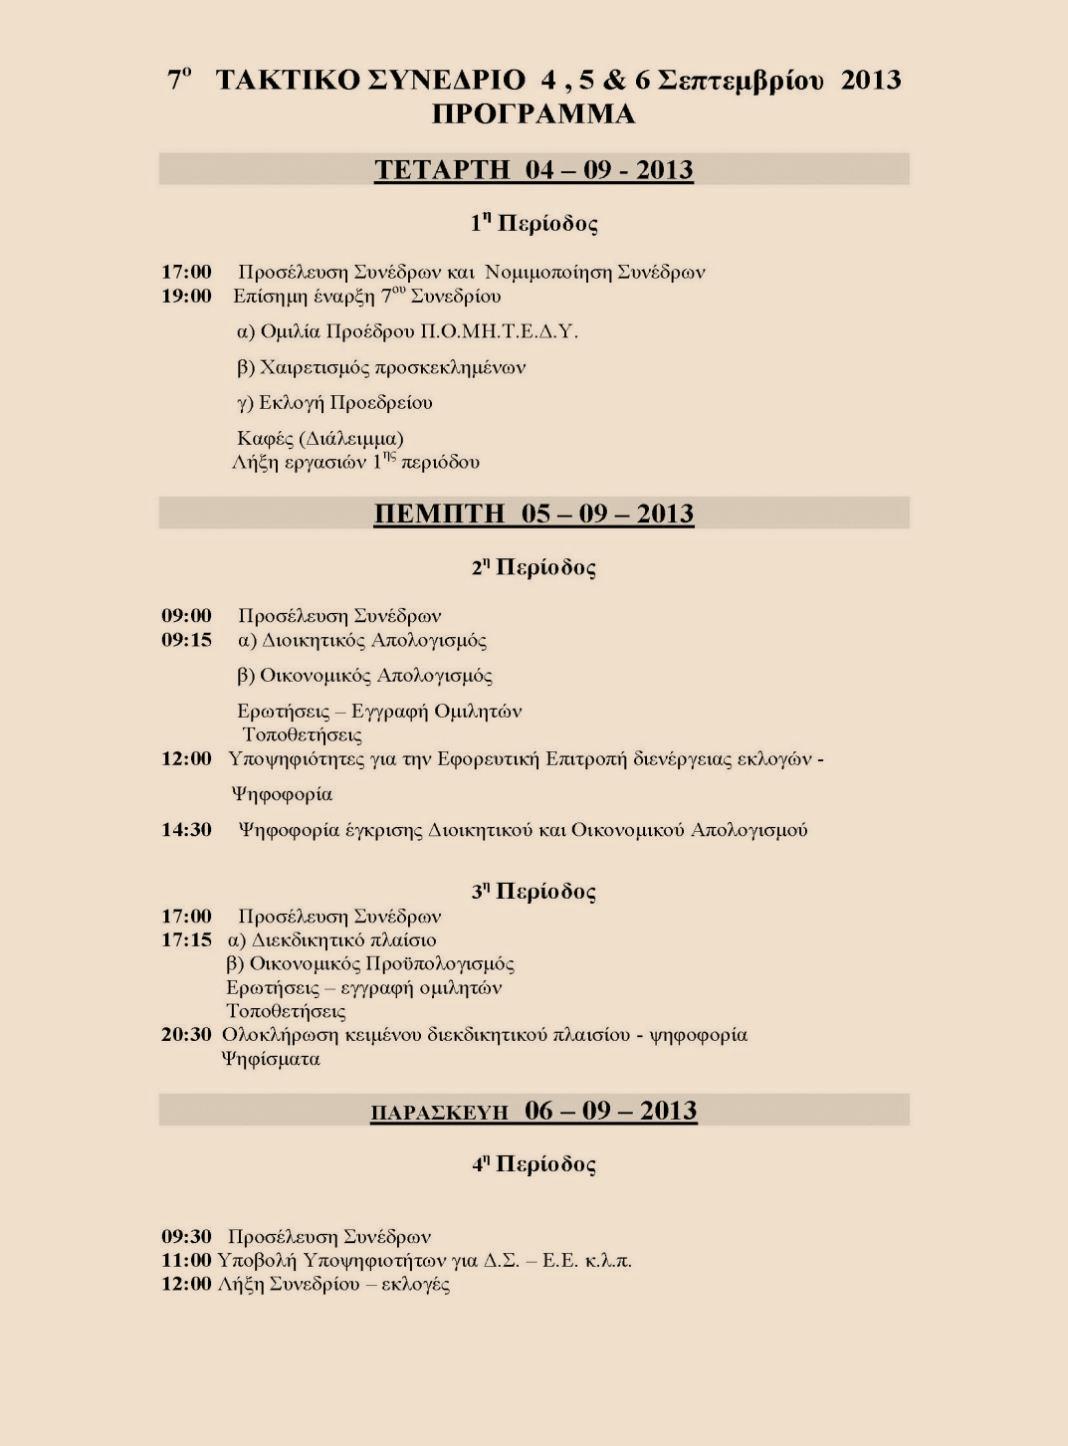 Το 7 ο Συνέδριο της Πανελλήνιας Ομοσπονδίας Μηχανικών Τεχνολογικού Τομέα Ανώτατης Εκπαίδευσης Δημοσίων Υπαλλήλων πραγματοποιήθηκε στο τριήμερο 4-5-6 Σεπτεμβρίου